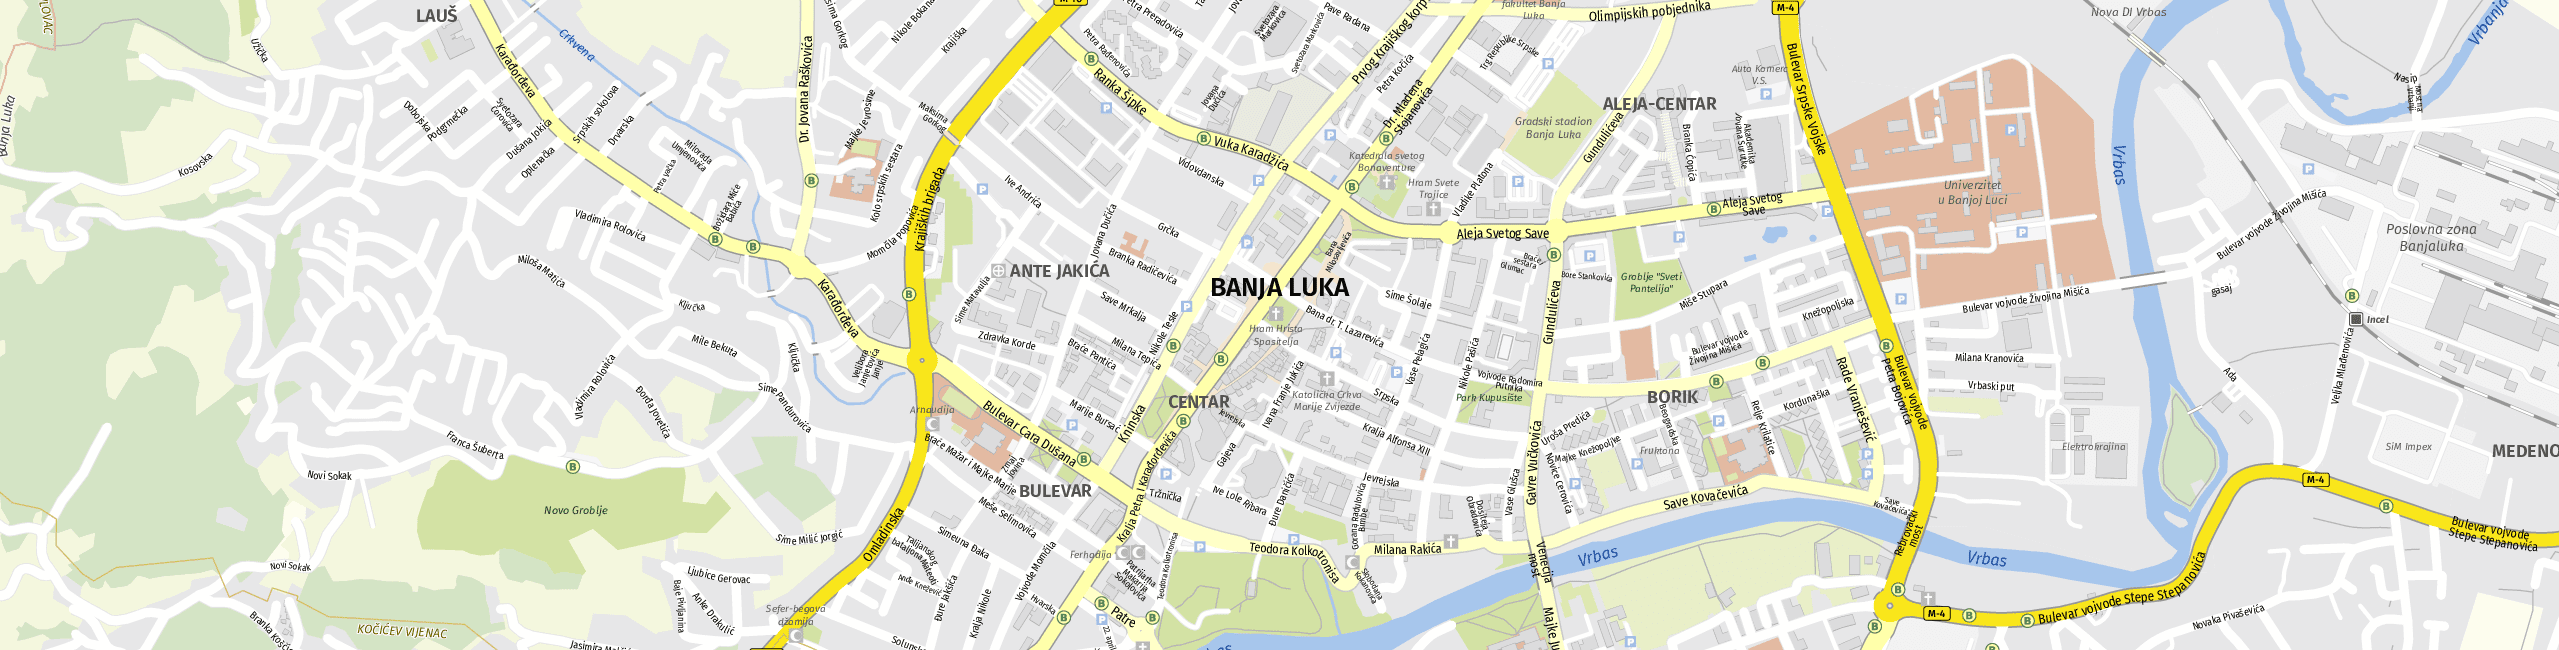 Stadtplan Banja Luka zum Downloaden.